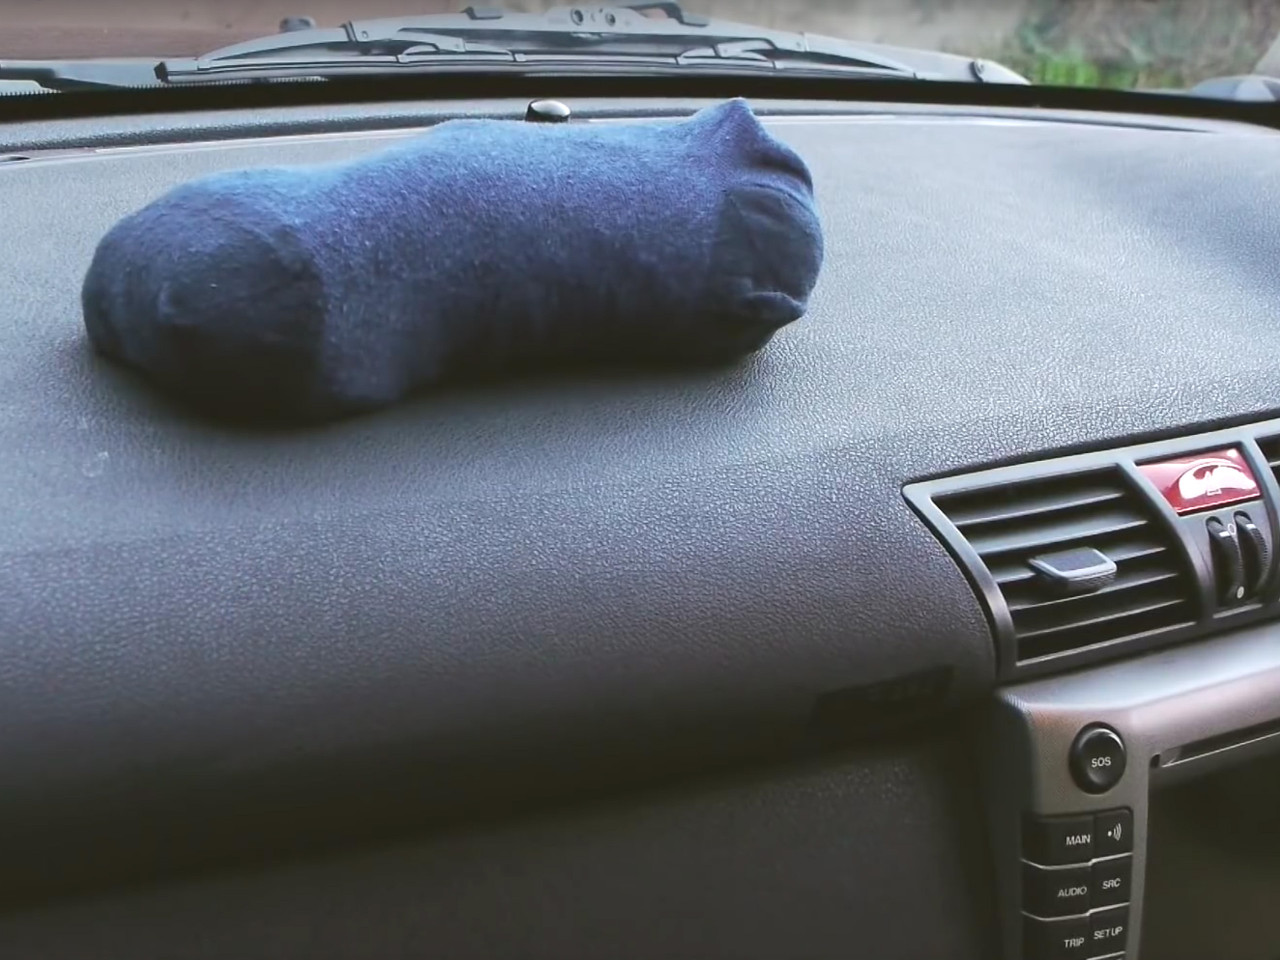 Beschlagene Scheiben im Auto: Das hilft für freie Sicht